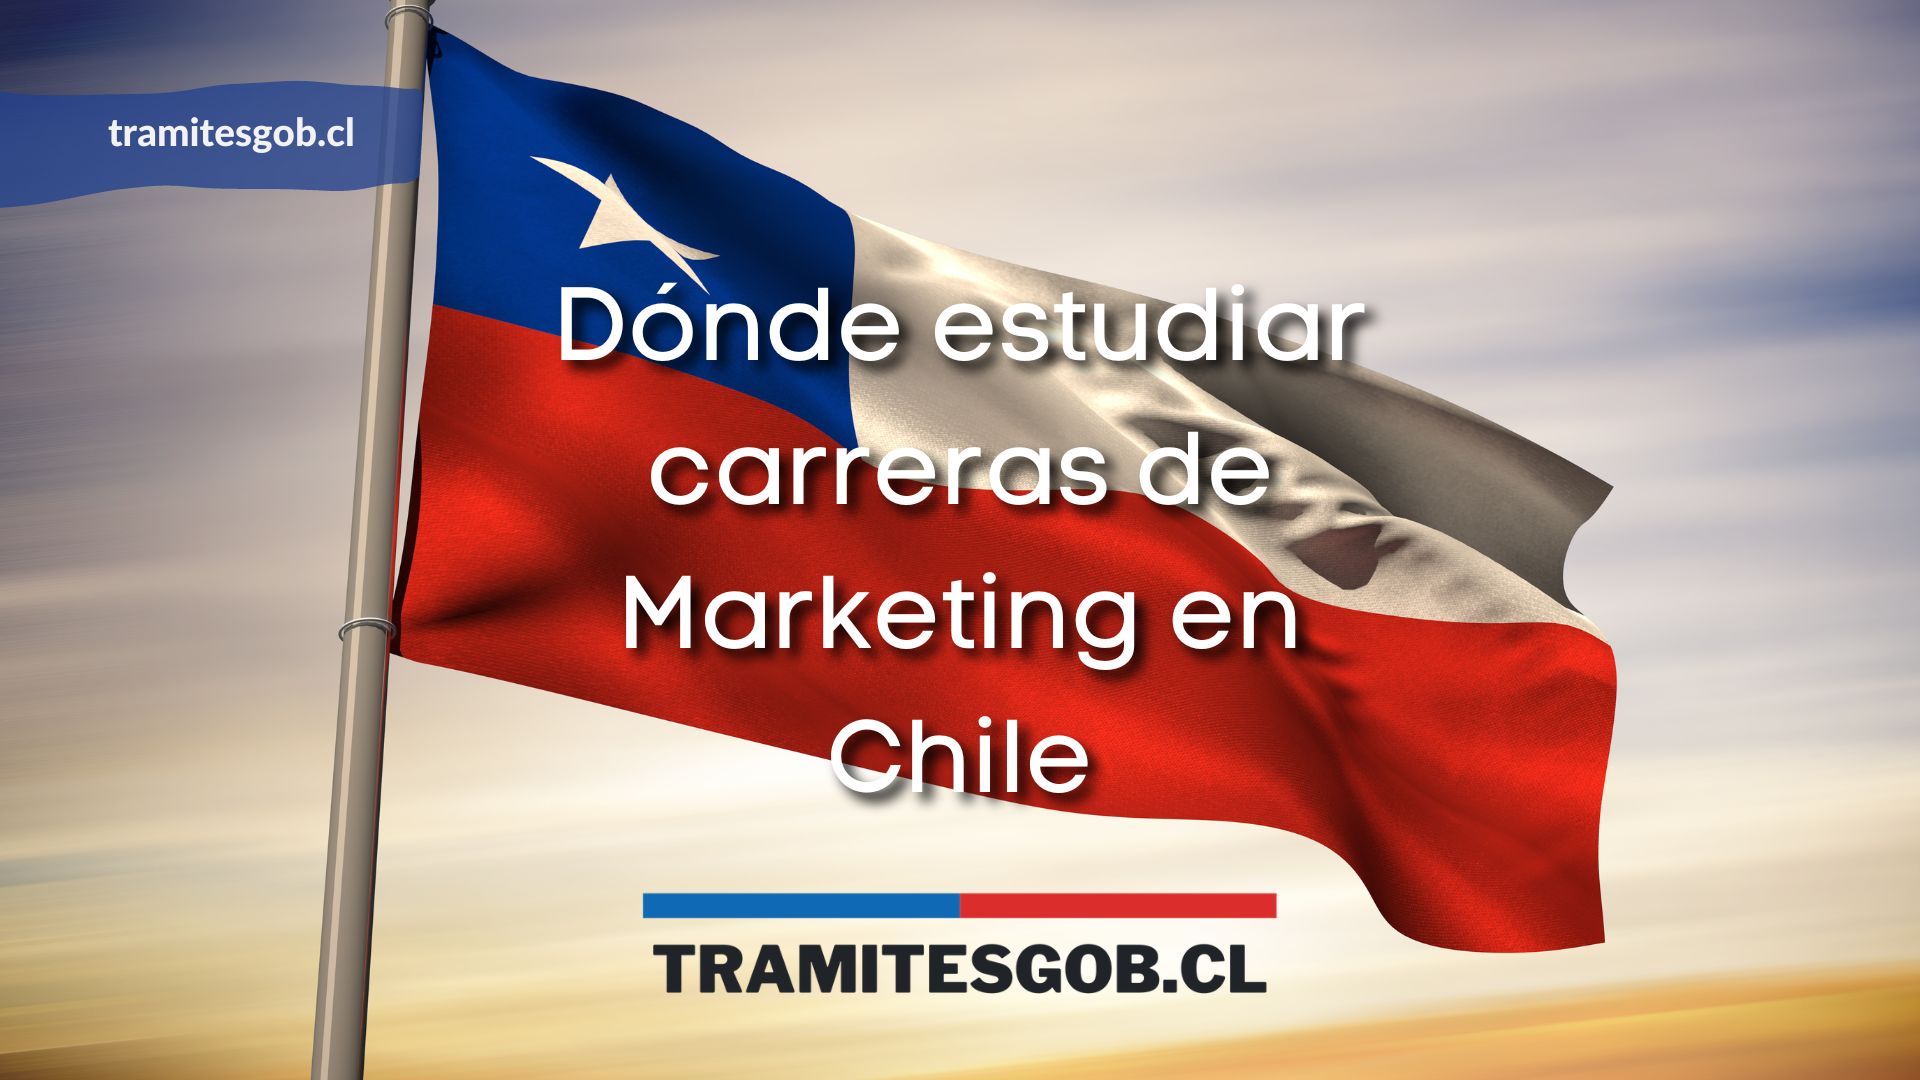 Dónde estudiar carreras de Marketing en Chile